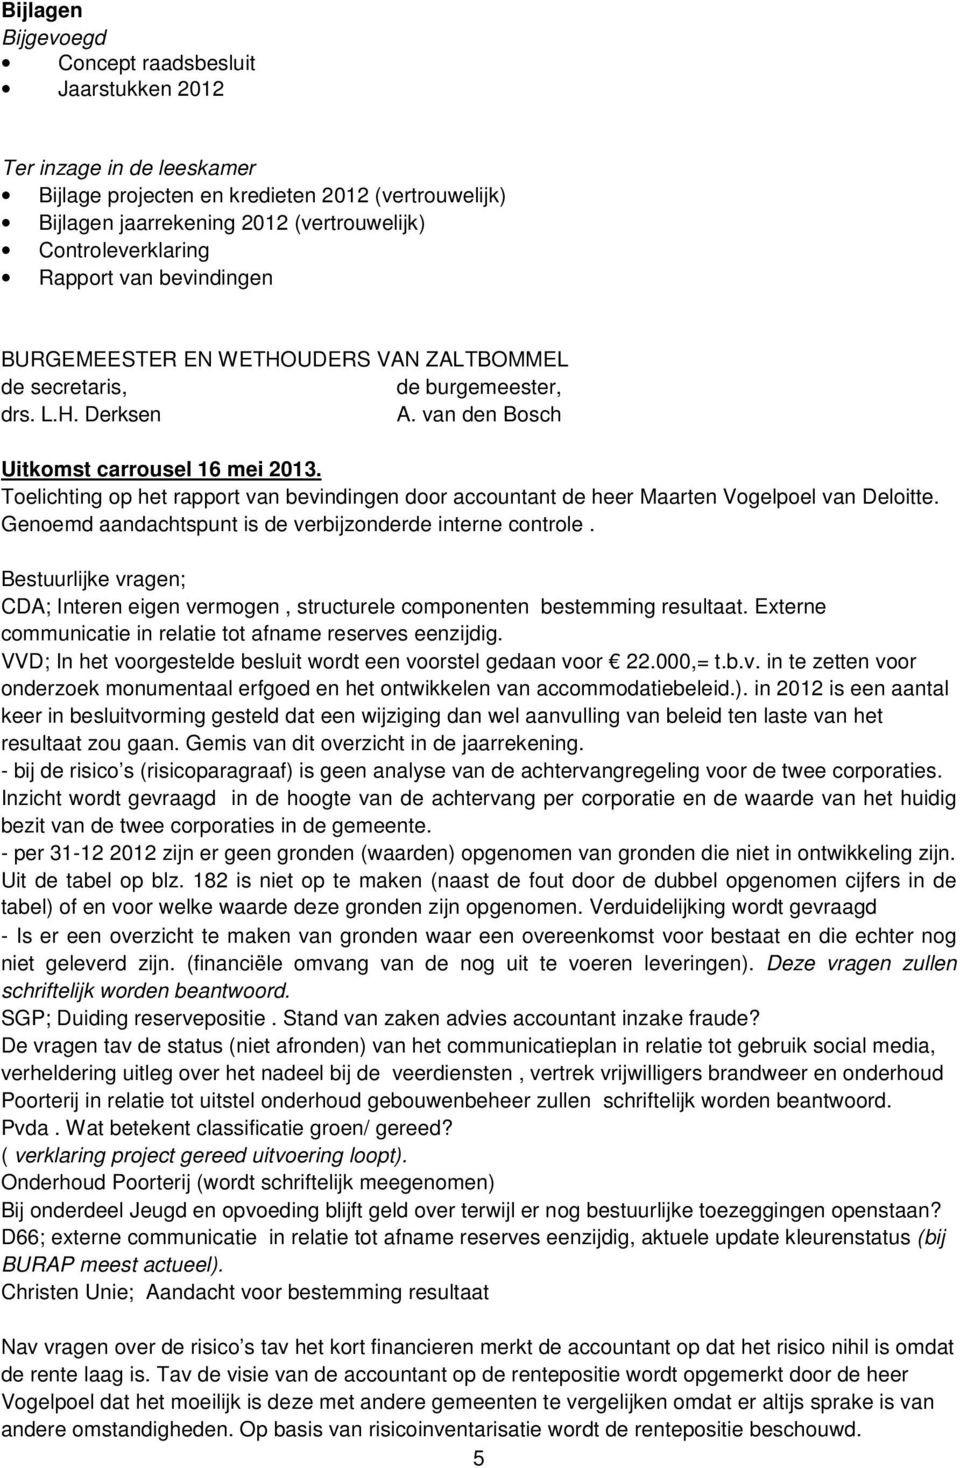 Toelichting op het rapport van bevindingen door accountant de heer Maarten Vogelpoel van Deloitte. Genoemd aandachtspunt is de verbijzonderde interne controle.